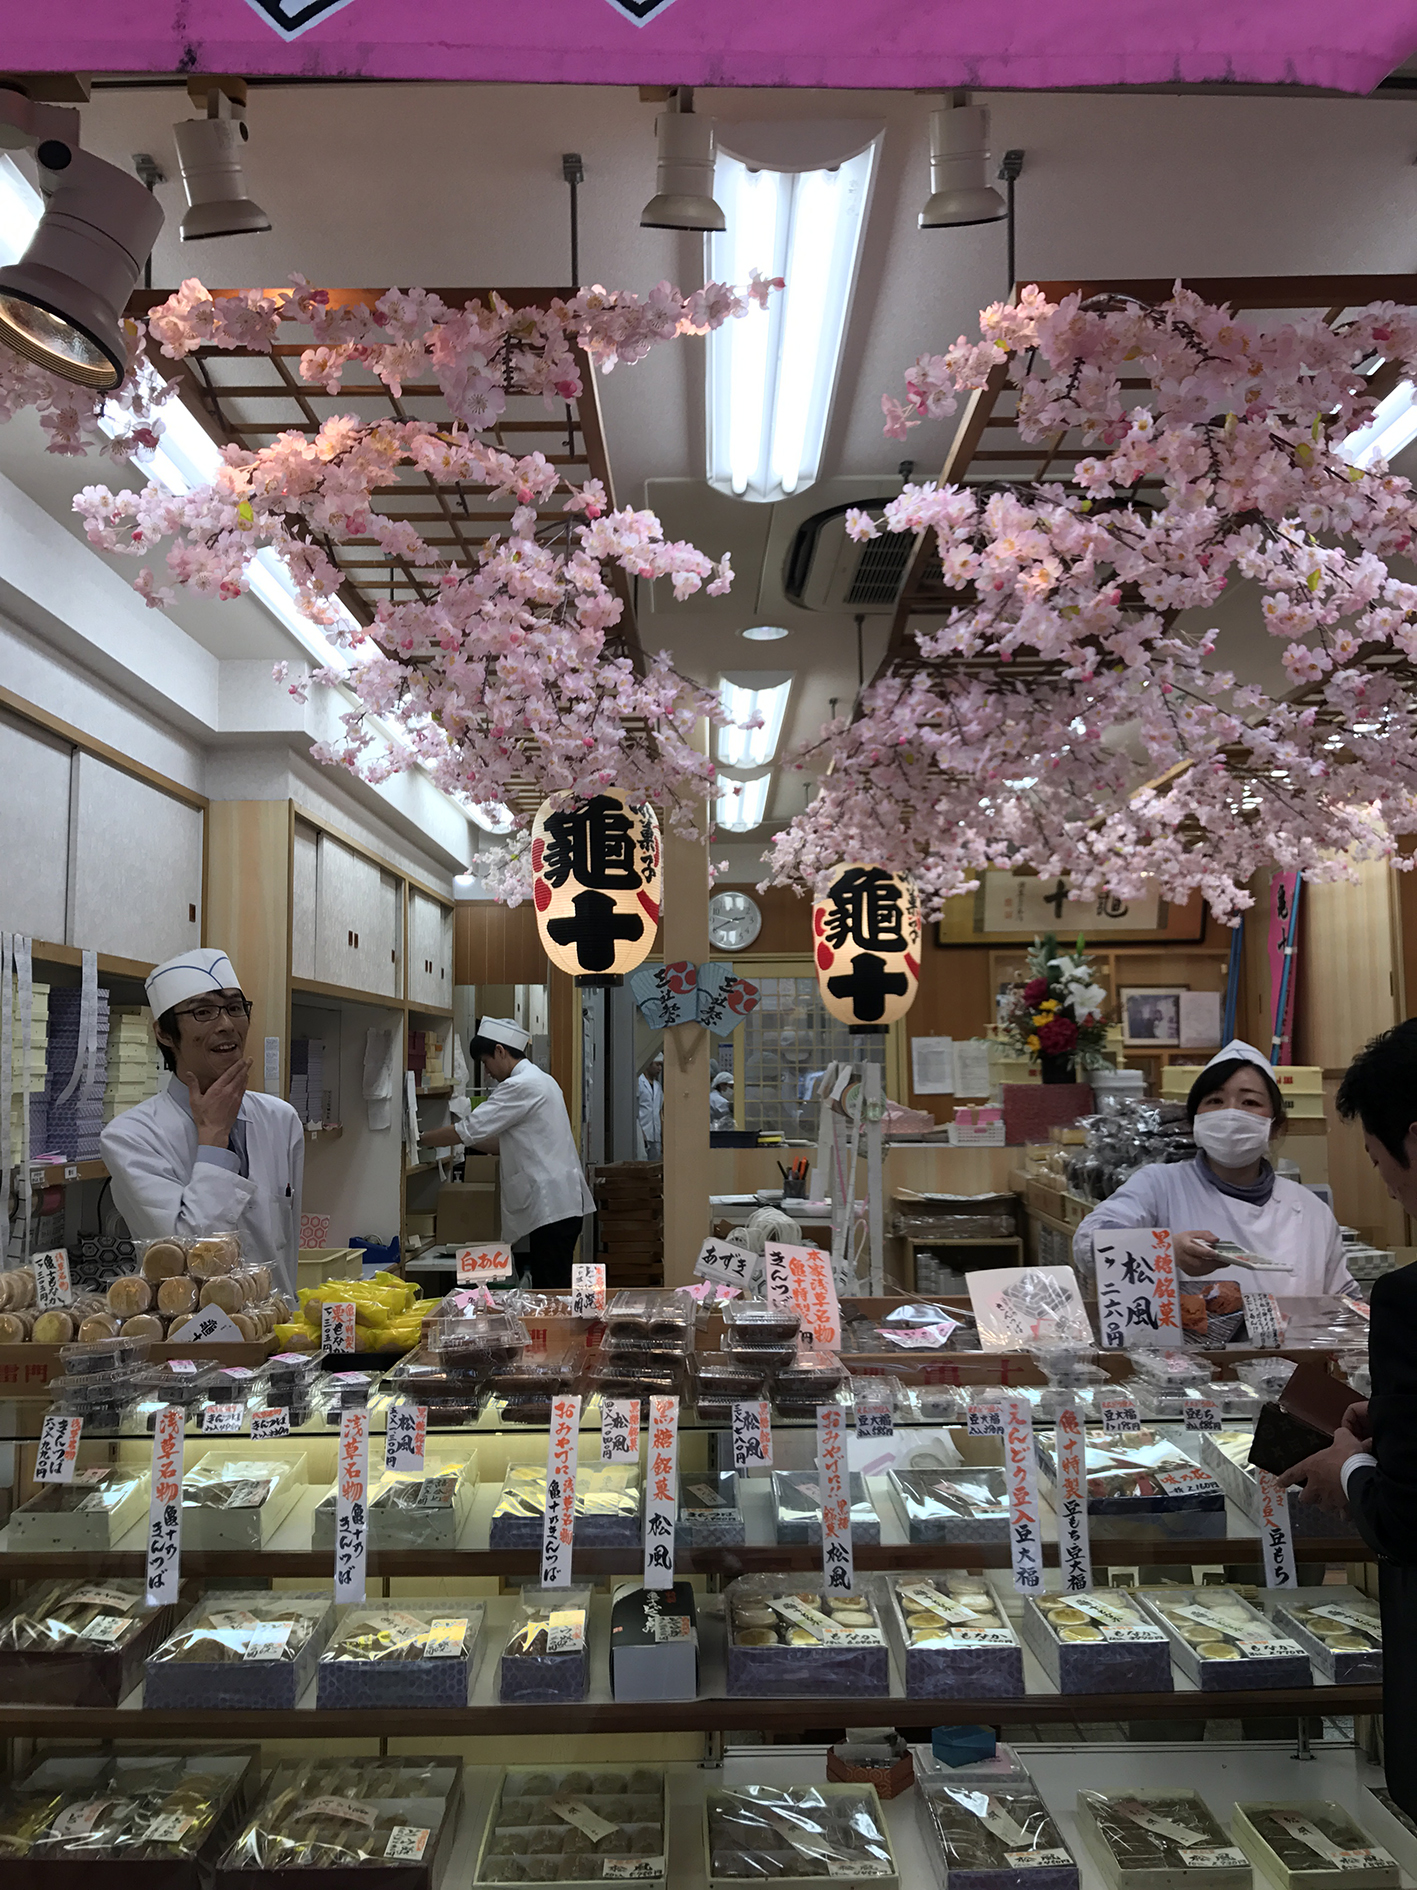 Tržnica u Tokyu, putovanje u Japan